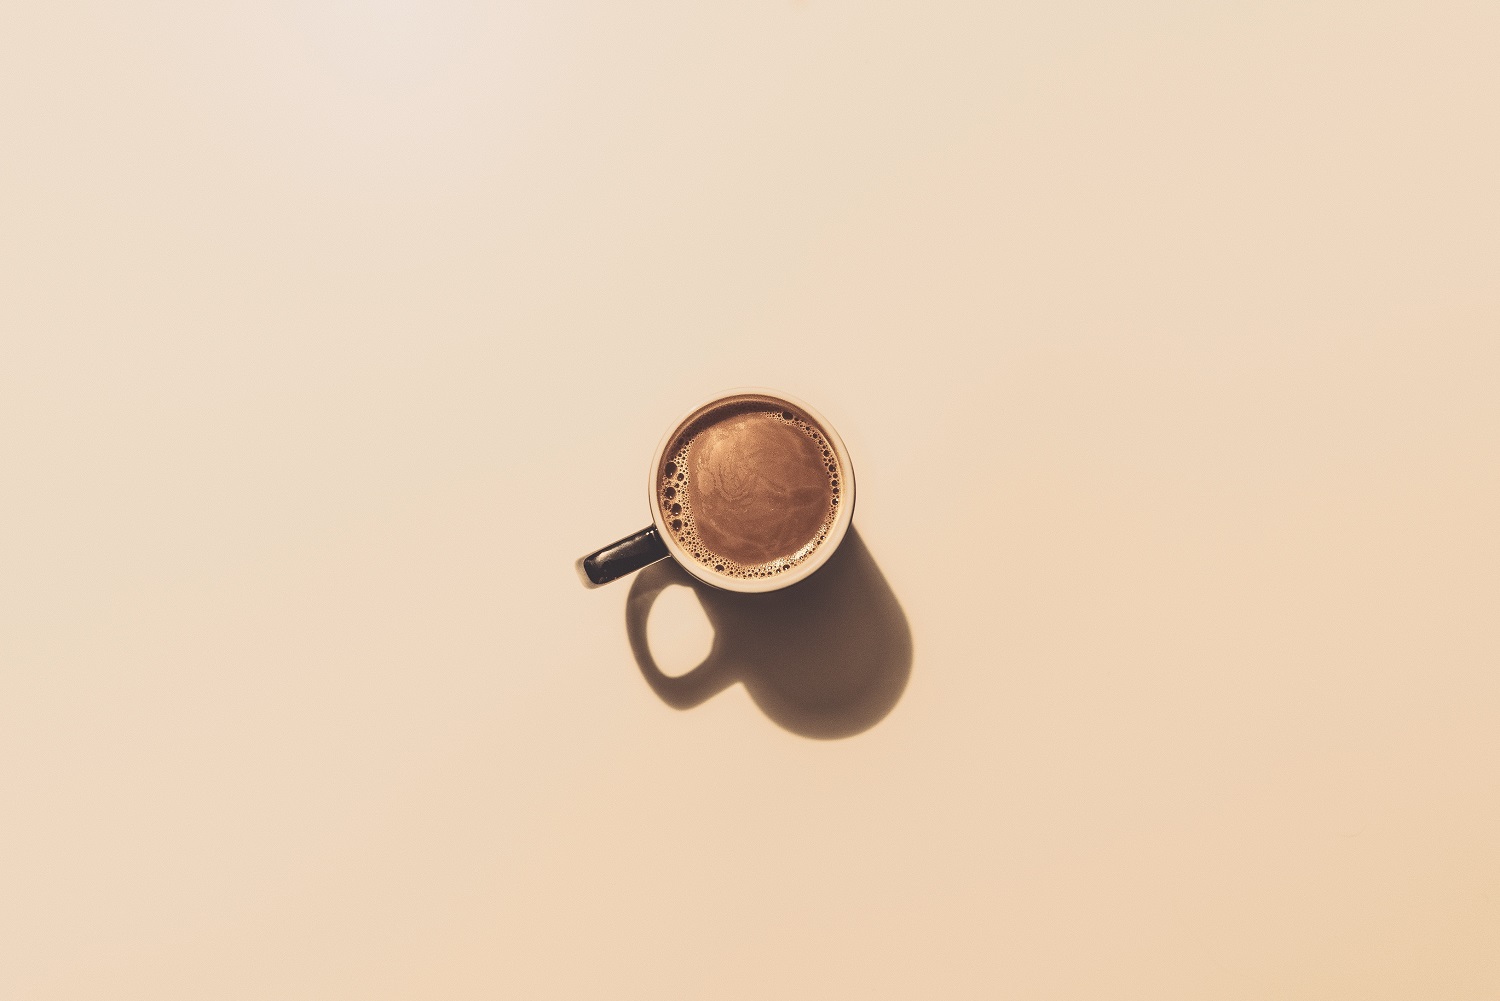 Vaistininkė: rytinis kavos puodelis – ne vienintelis būdas pabusti 